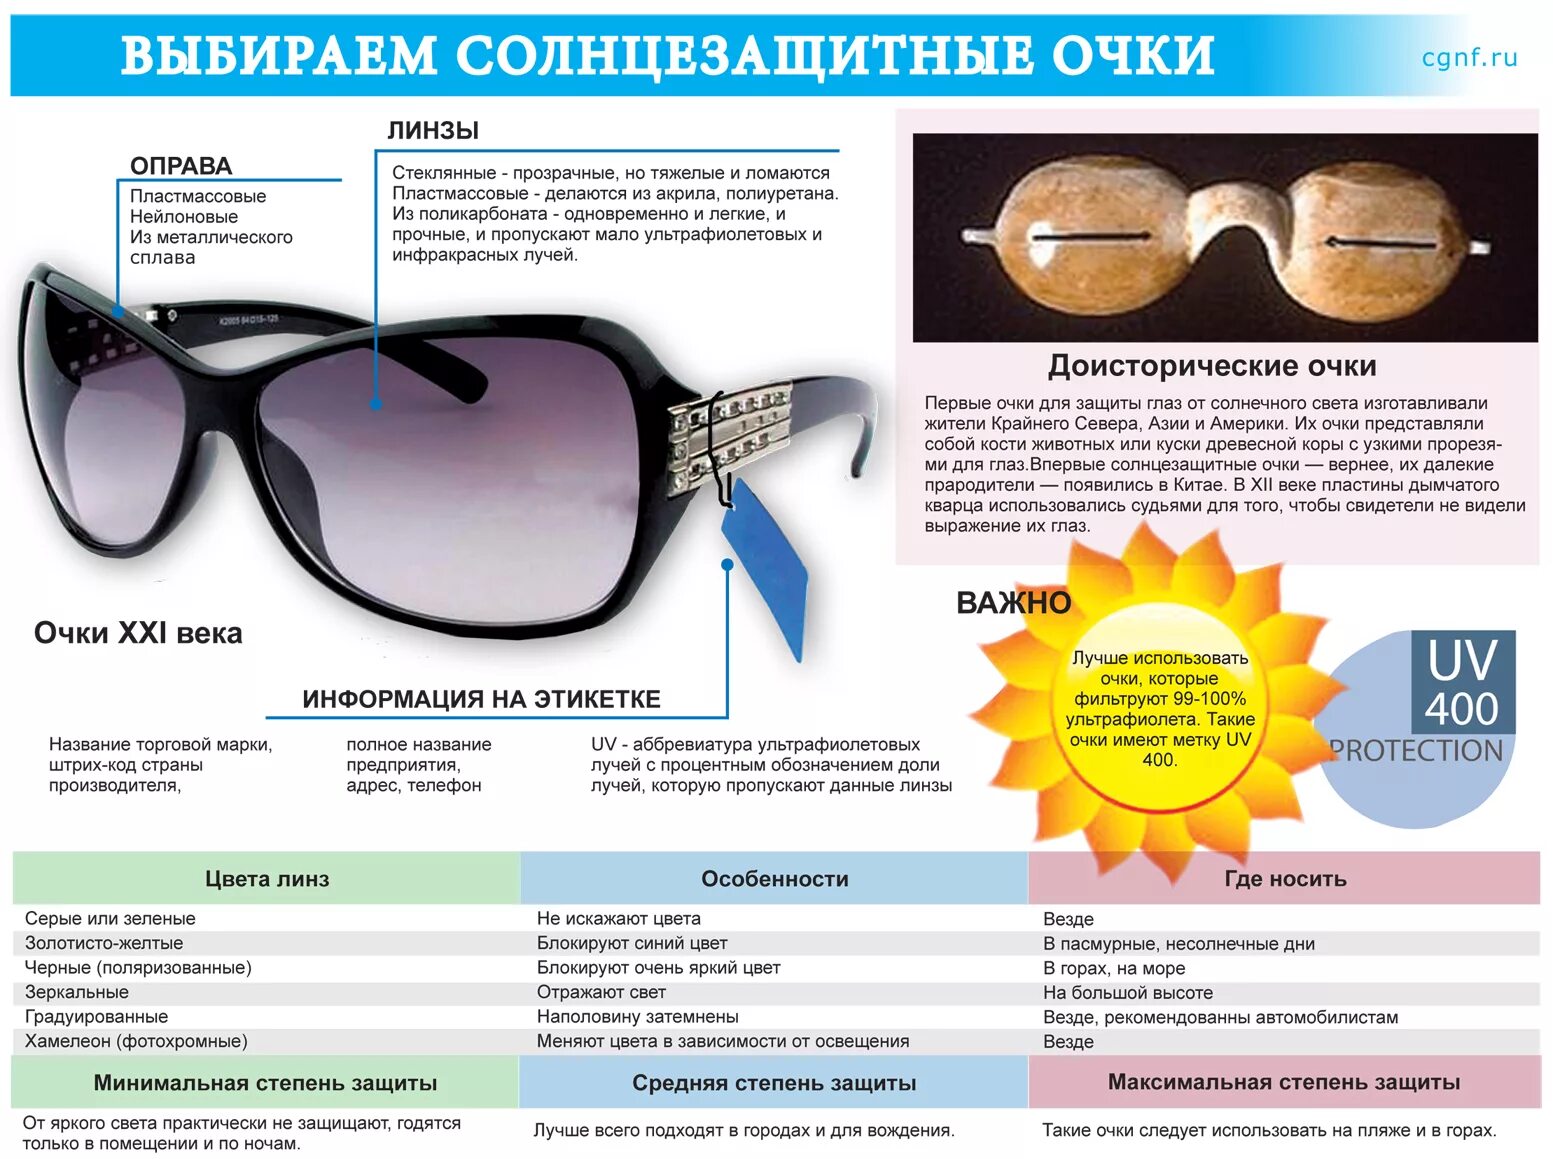 Можно вернуть очки в магазин. Солнцезащитные очки как правильно выбрать степень защиты от солнца. Уровни защиты солнцезащитных очков. Маркировка солнцезащитных очков. Описание солнечных очков.